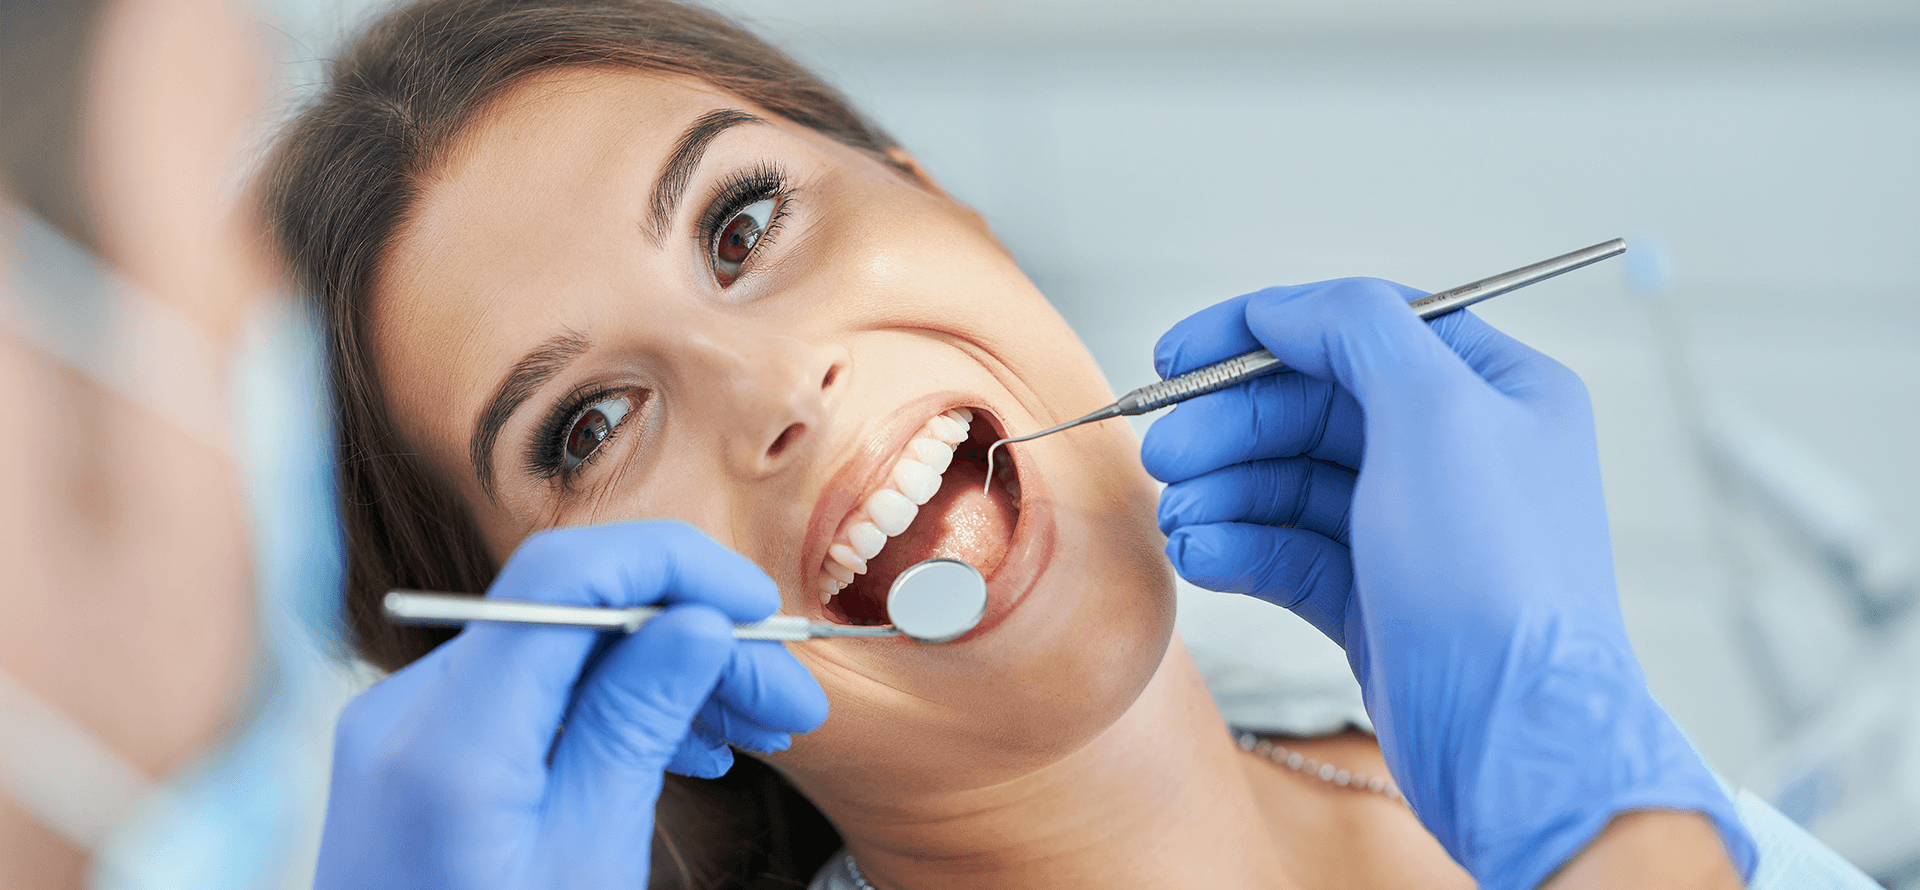 Periodontologia: o que é?